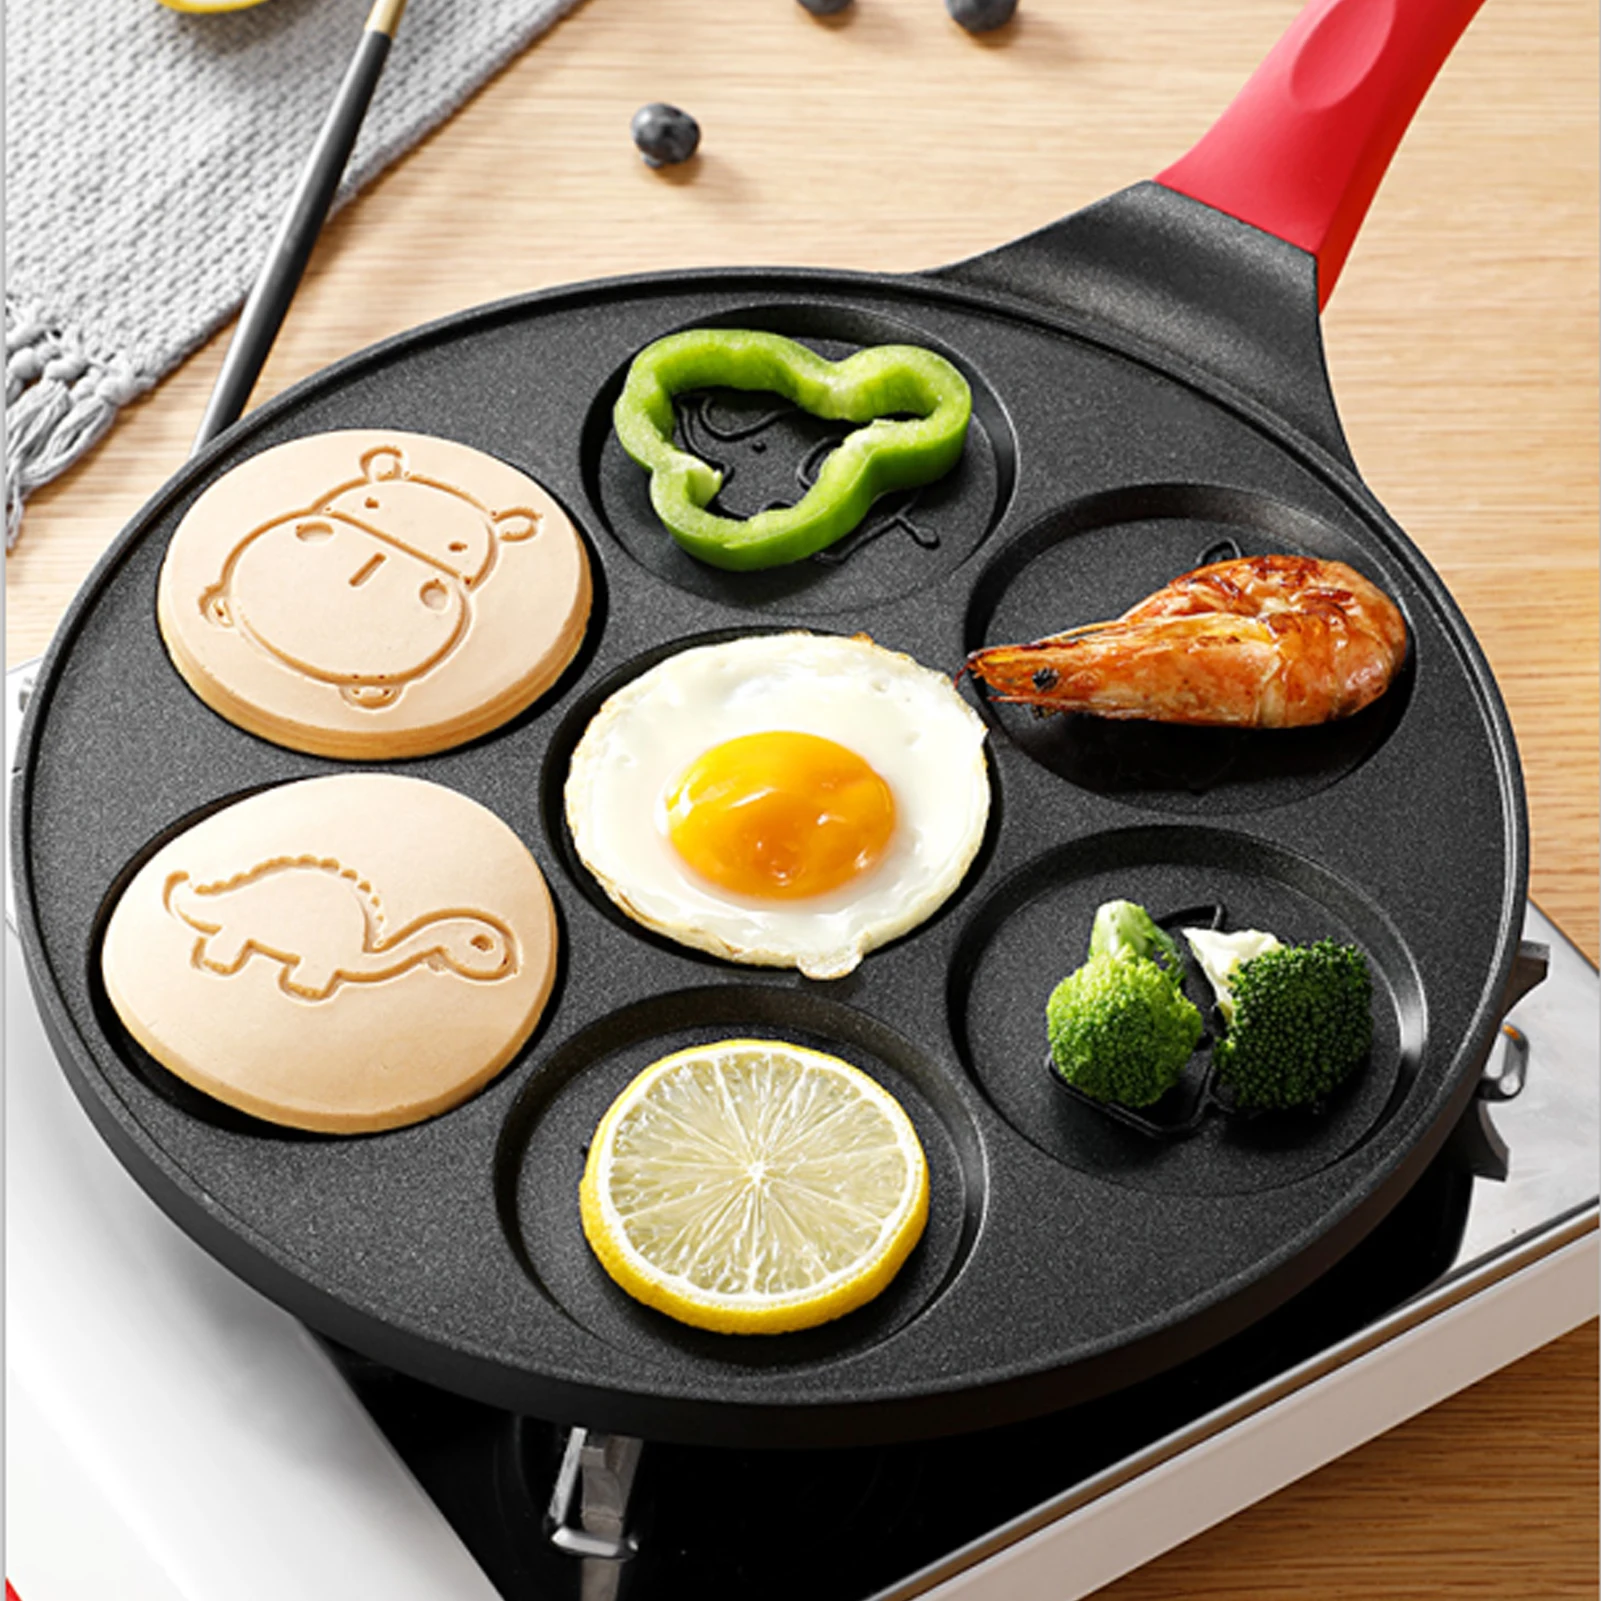 https://ae01.alicdn.com/kf/S5a13088189aa46a389bb798be040d06d7/animal-Pancake-Maker-Pan-Griddle-Pancake-Pan-Molds-for-Kids-Nonstick-Pancake-Griddle-Pan-with-7.jpg